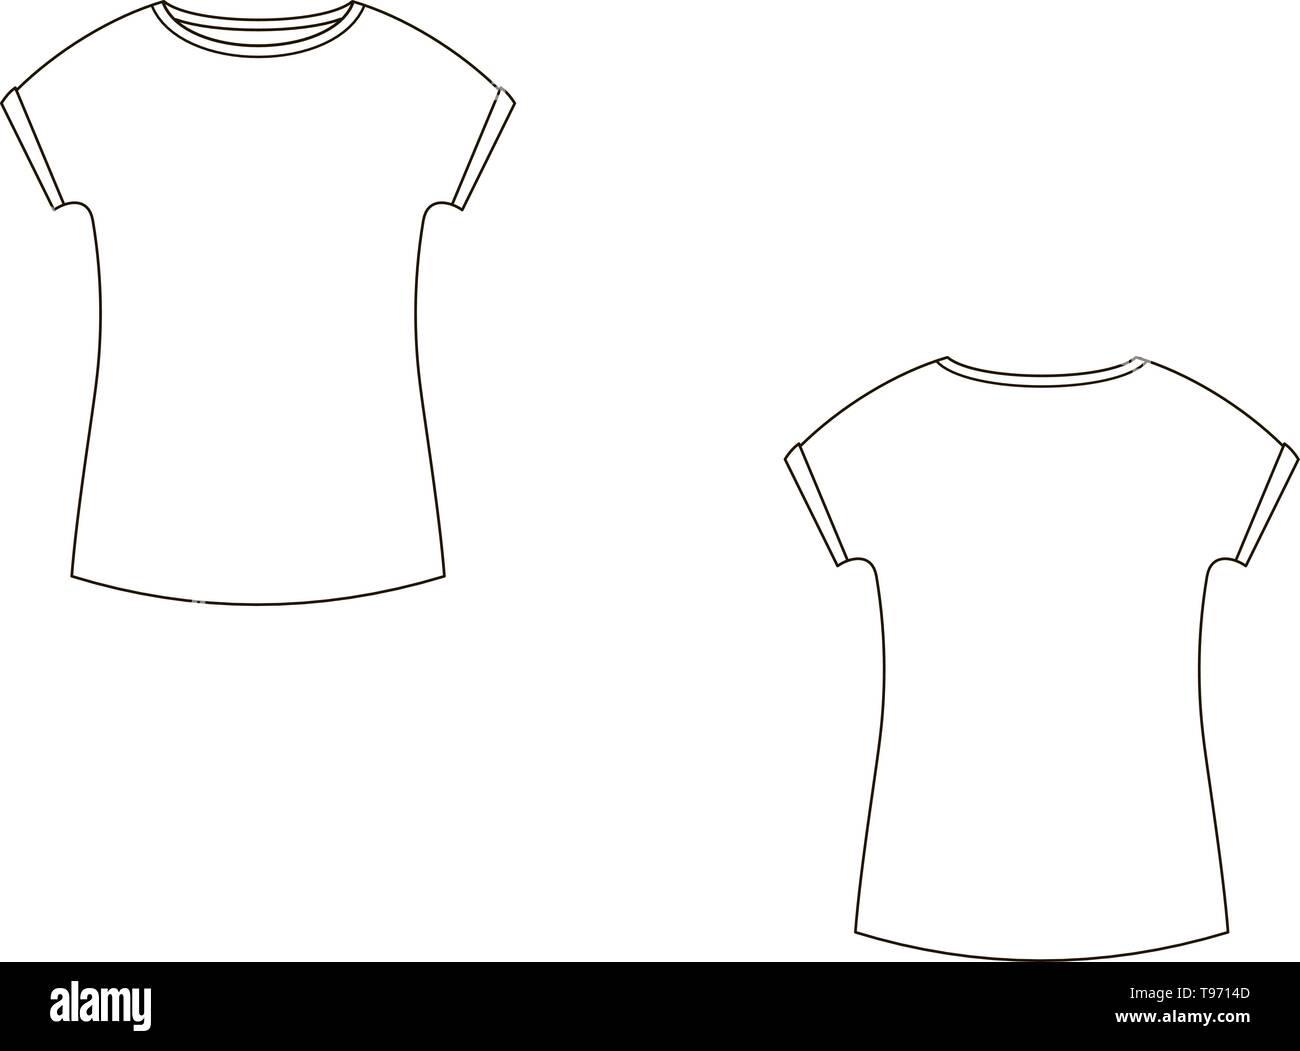 Croquis techniques Mode de t-shirt en graphique vectoriel Image Vectorielle  Stock - Alamy